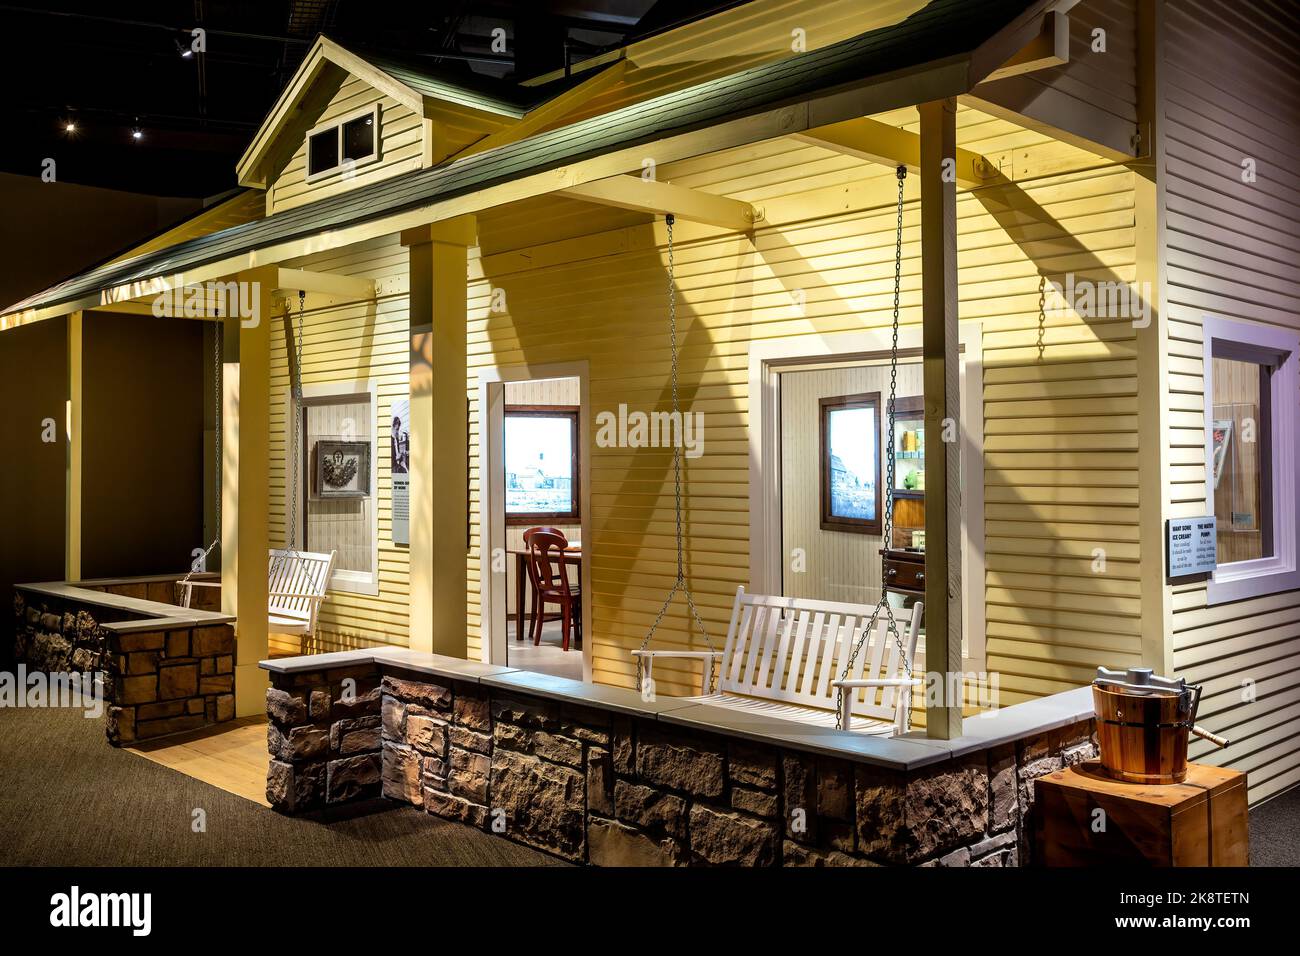 Maison en bois, destination Colorado Exhibition (représentée par la ville de Keota), History Colorado Center (musée), Denver, Colorado USA Banque D'Images